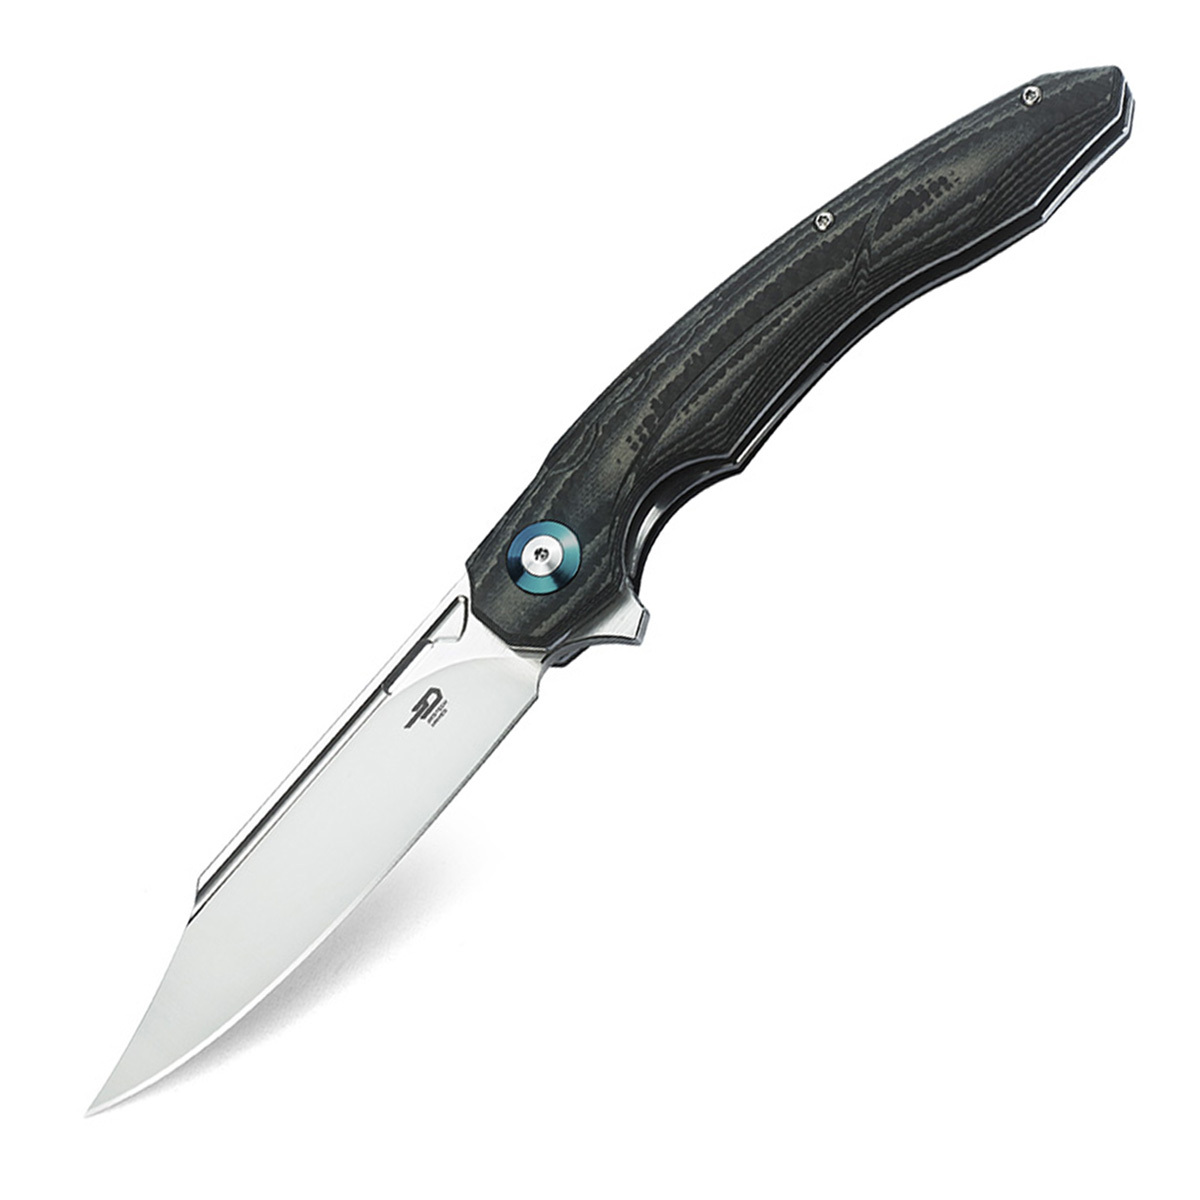 Складной нож Bestech Fanga, сталь D2, рукоять черно-бежевая G10/карбон складной нож bestech swift сталь d2 micarta